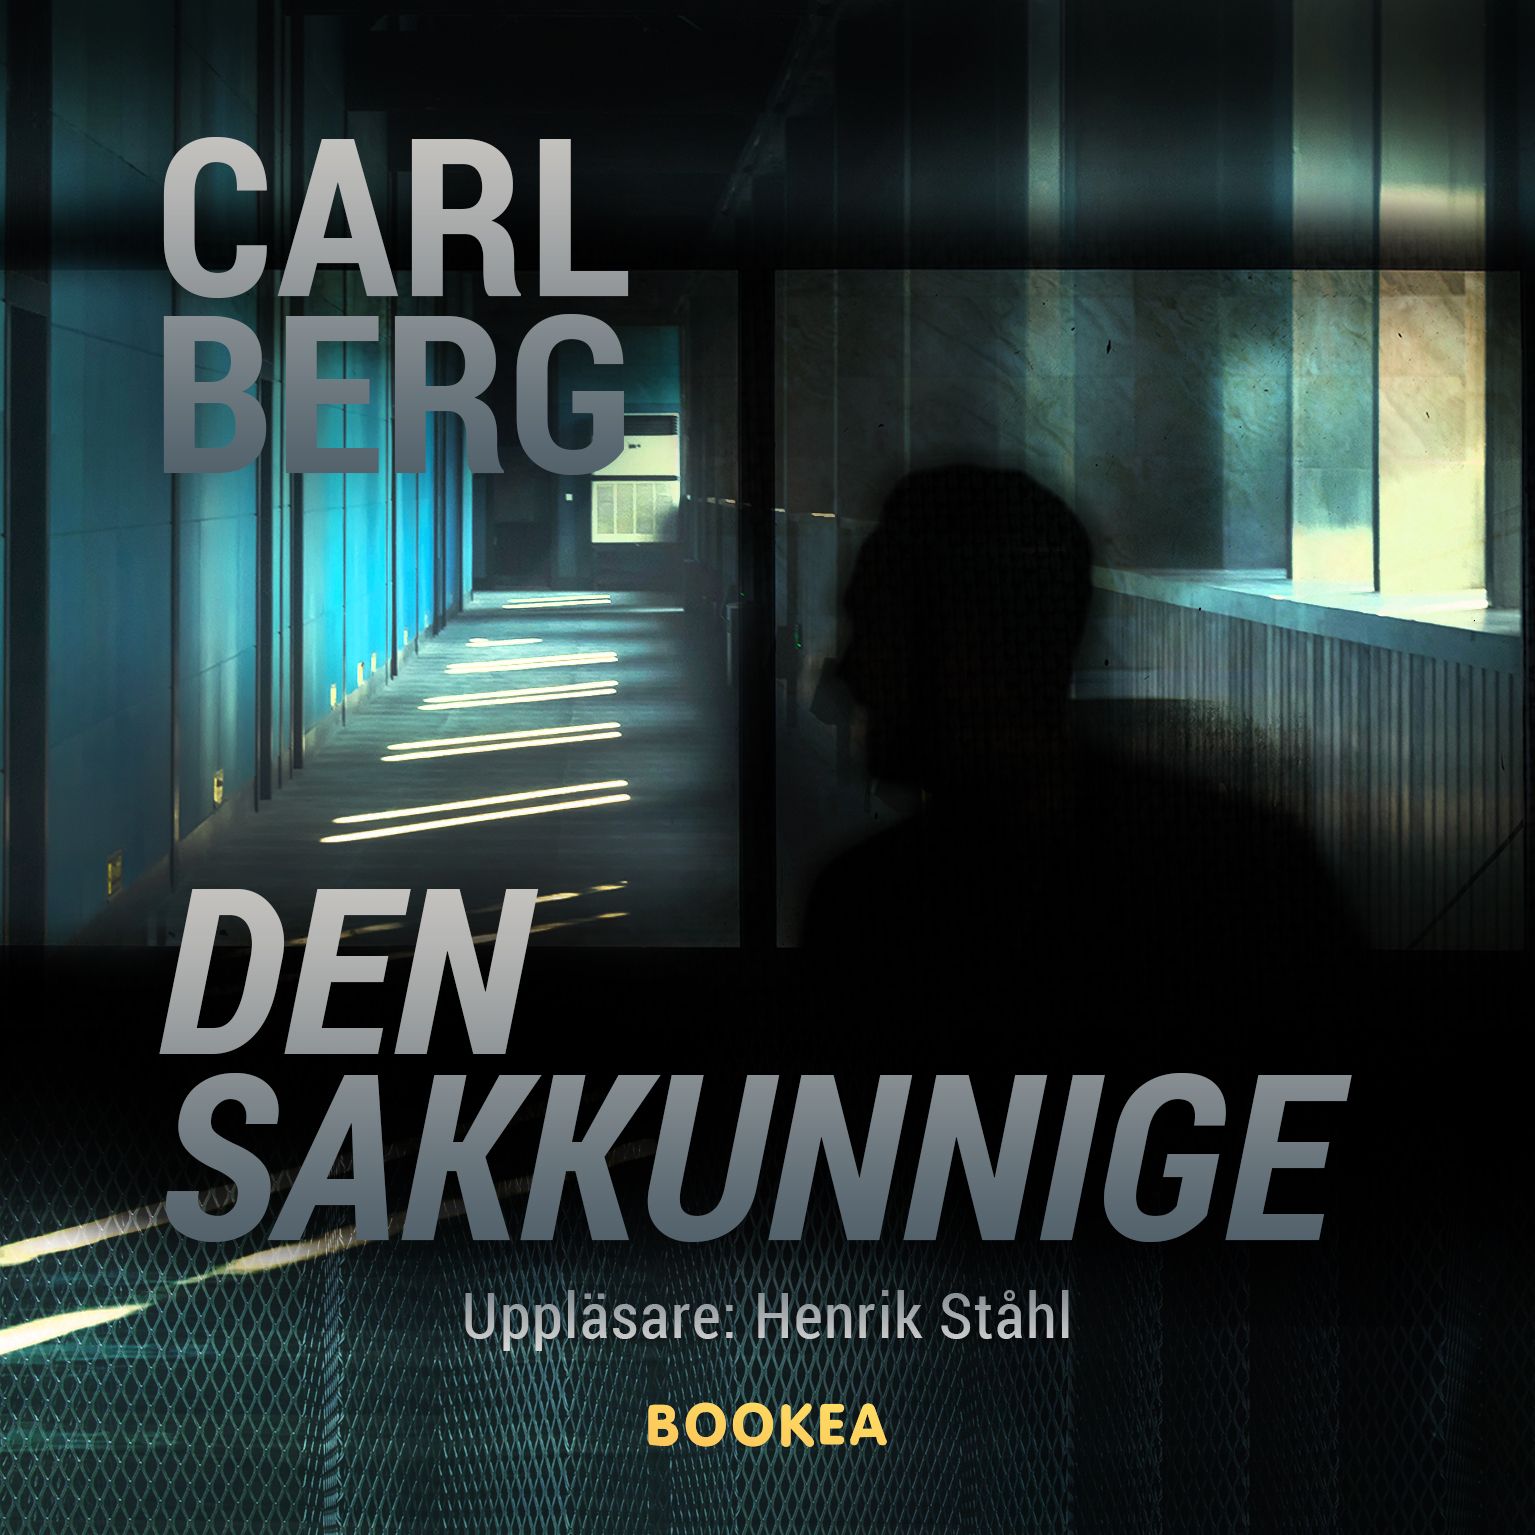 Den sakkunnige, ljudbok av Carl Berg